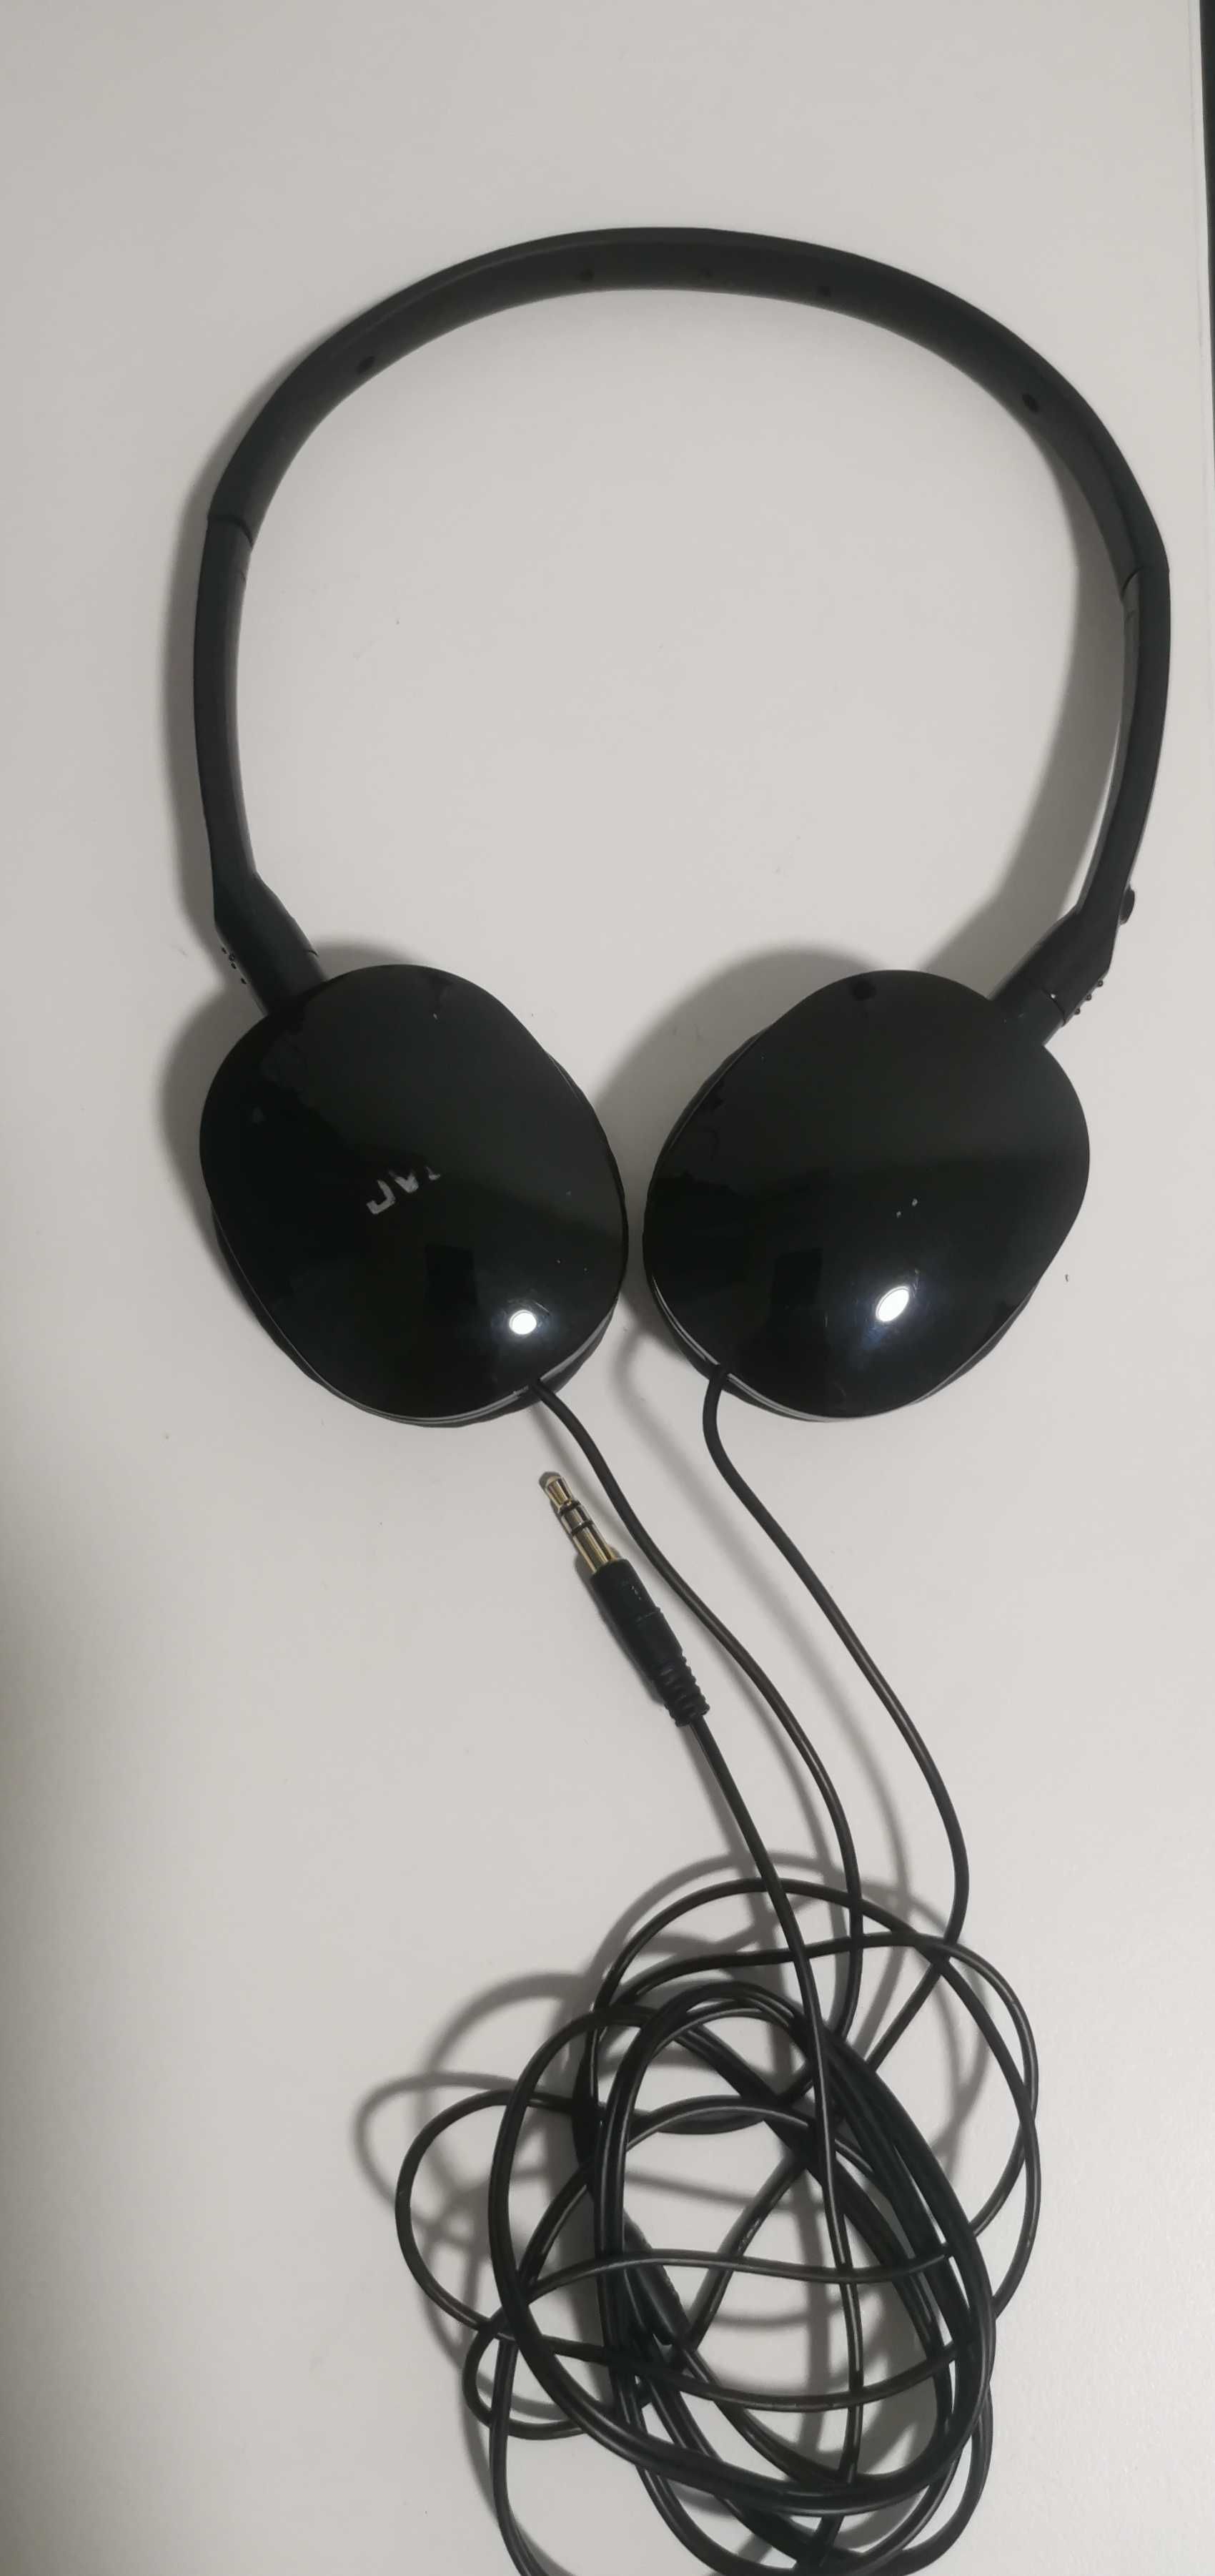 JVC слушалки с кабел - леки и удобни